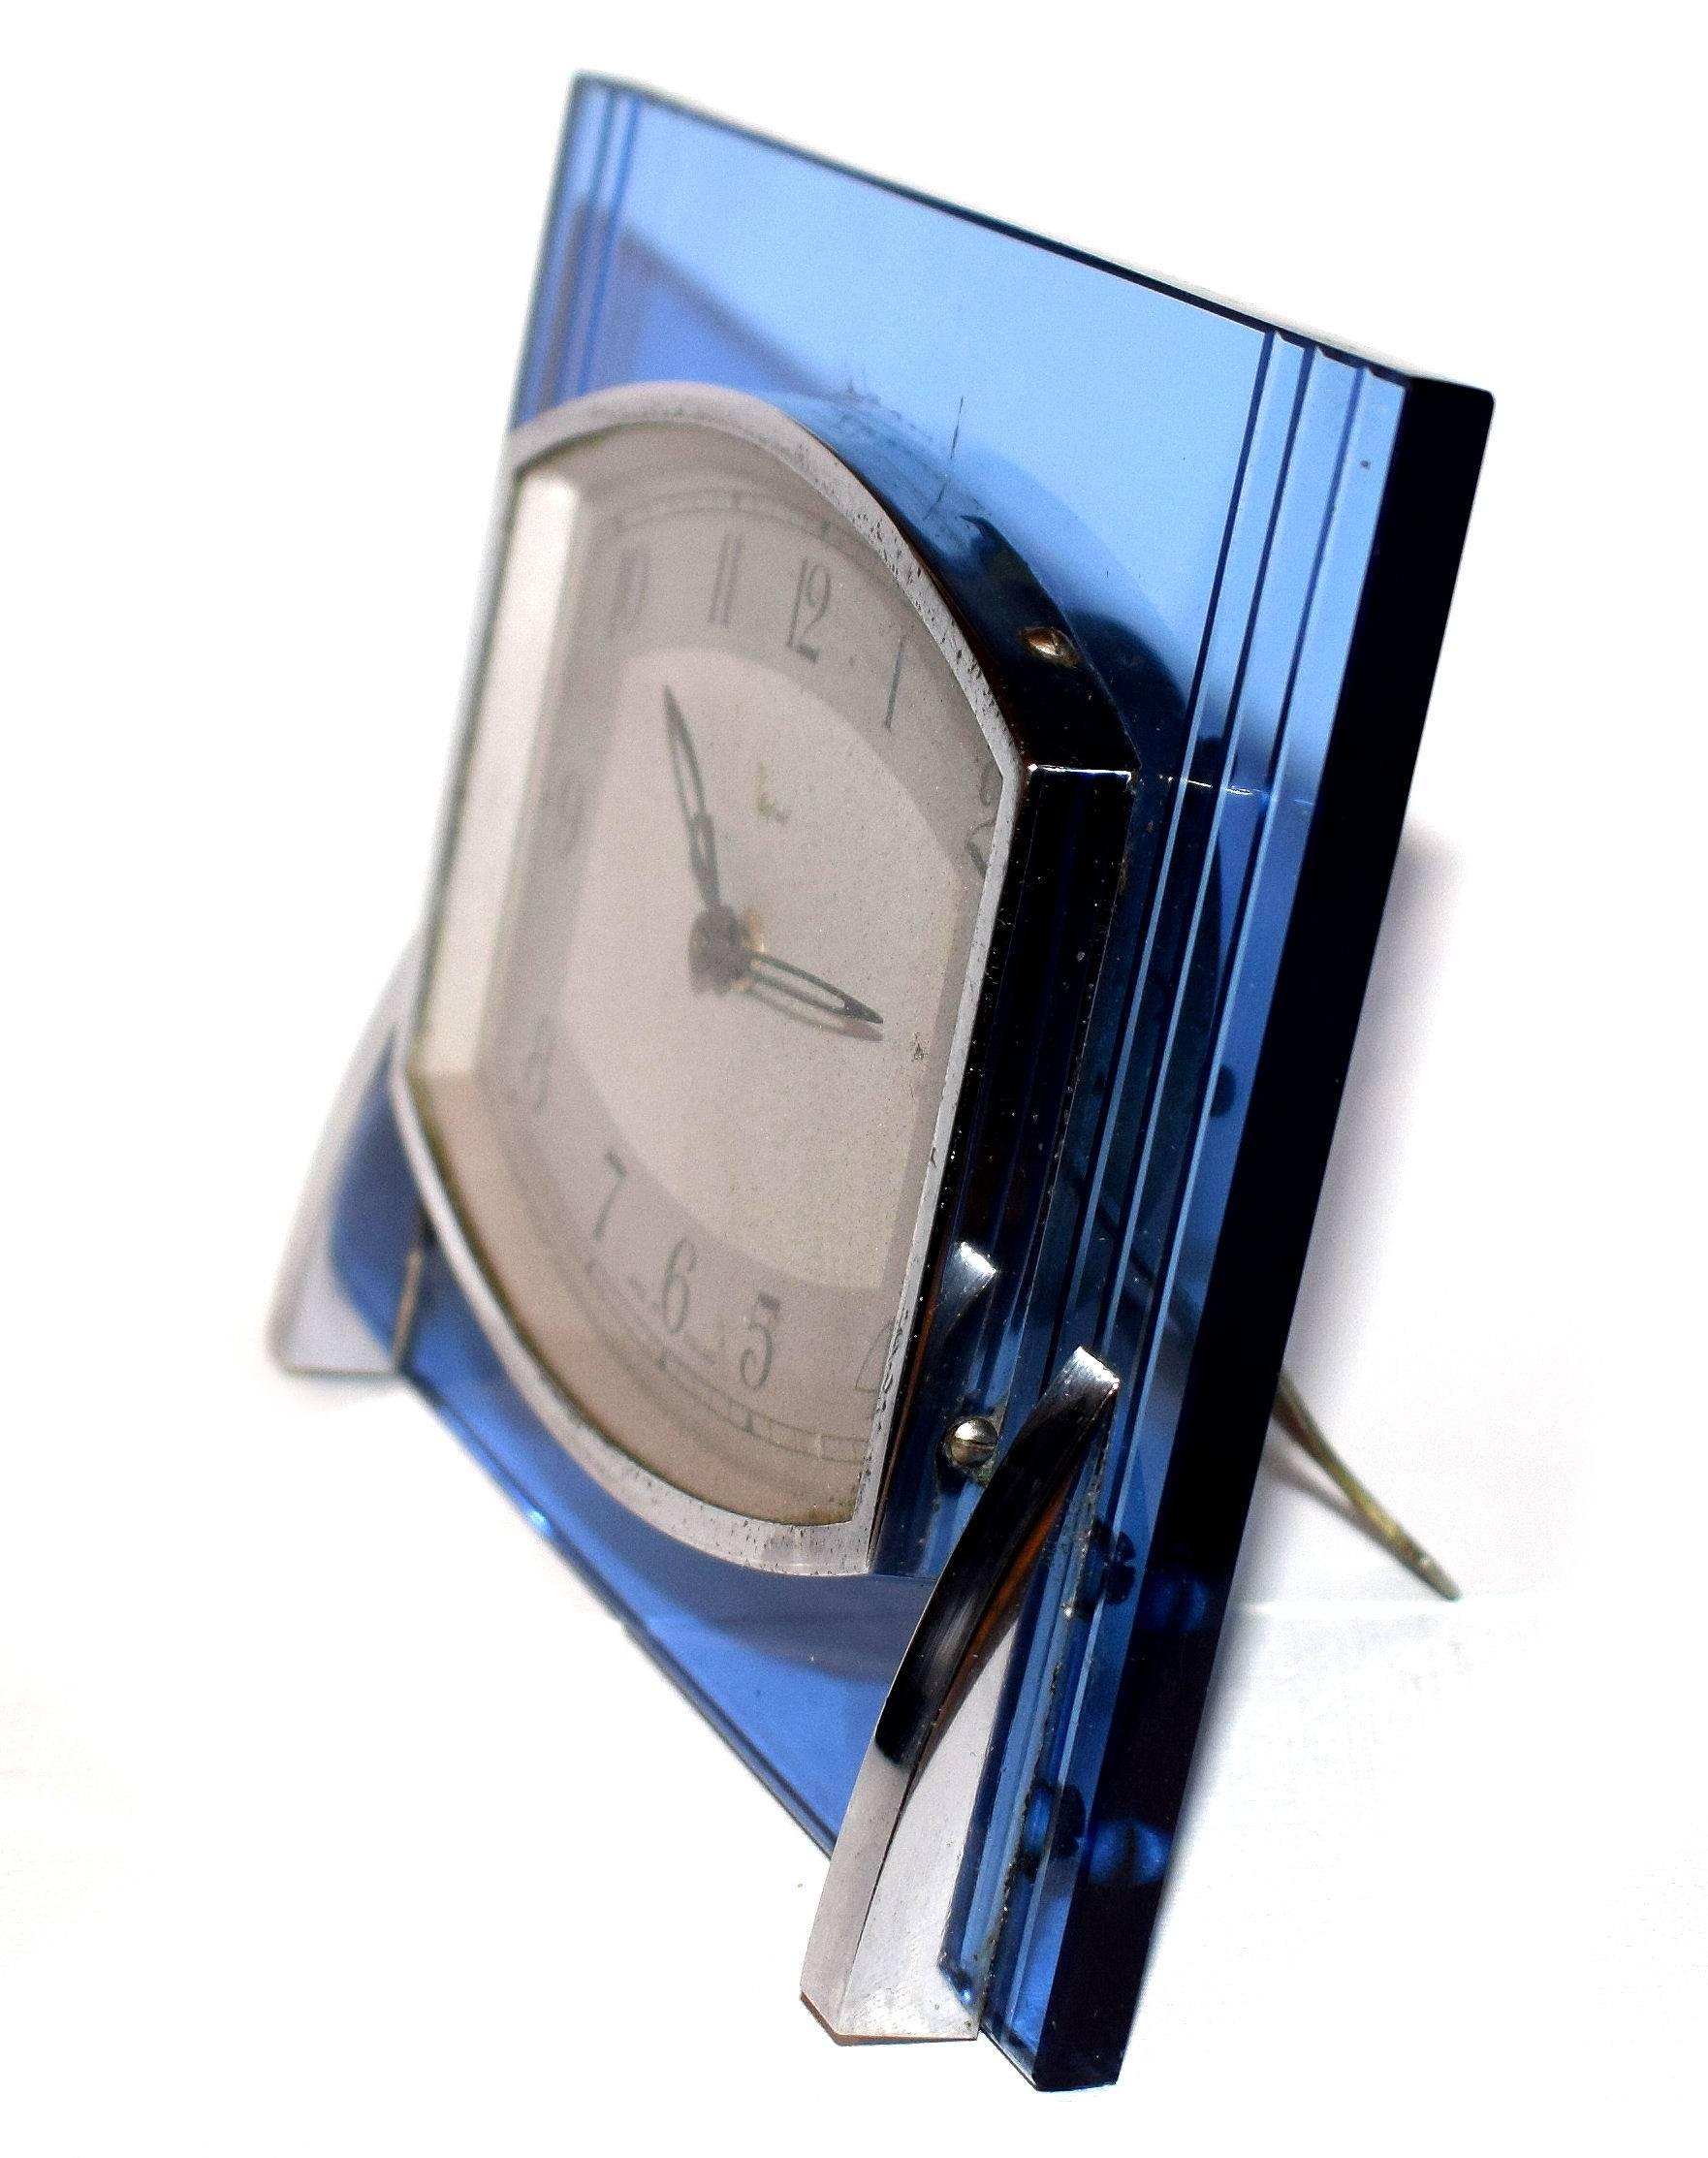 Élégante horloge anglaise des années 1930 en verre bleu avec des accents chromés par Enfield. Taille idéale pour un usage moderne, une cheminée ou un bureau. Il possède un chevalet en métal à l'arrière pour se tenir debout. Nous avons fait réviser